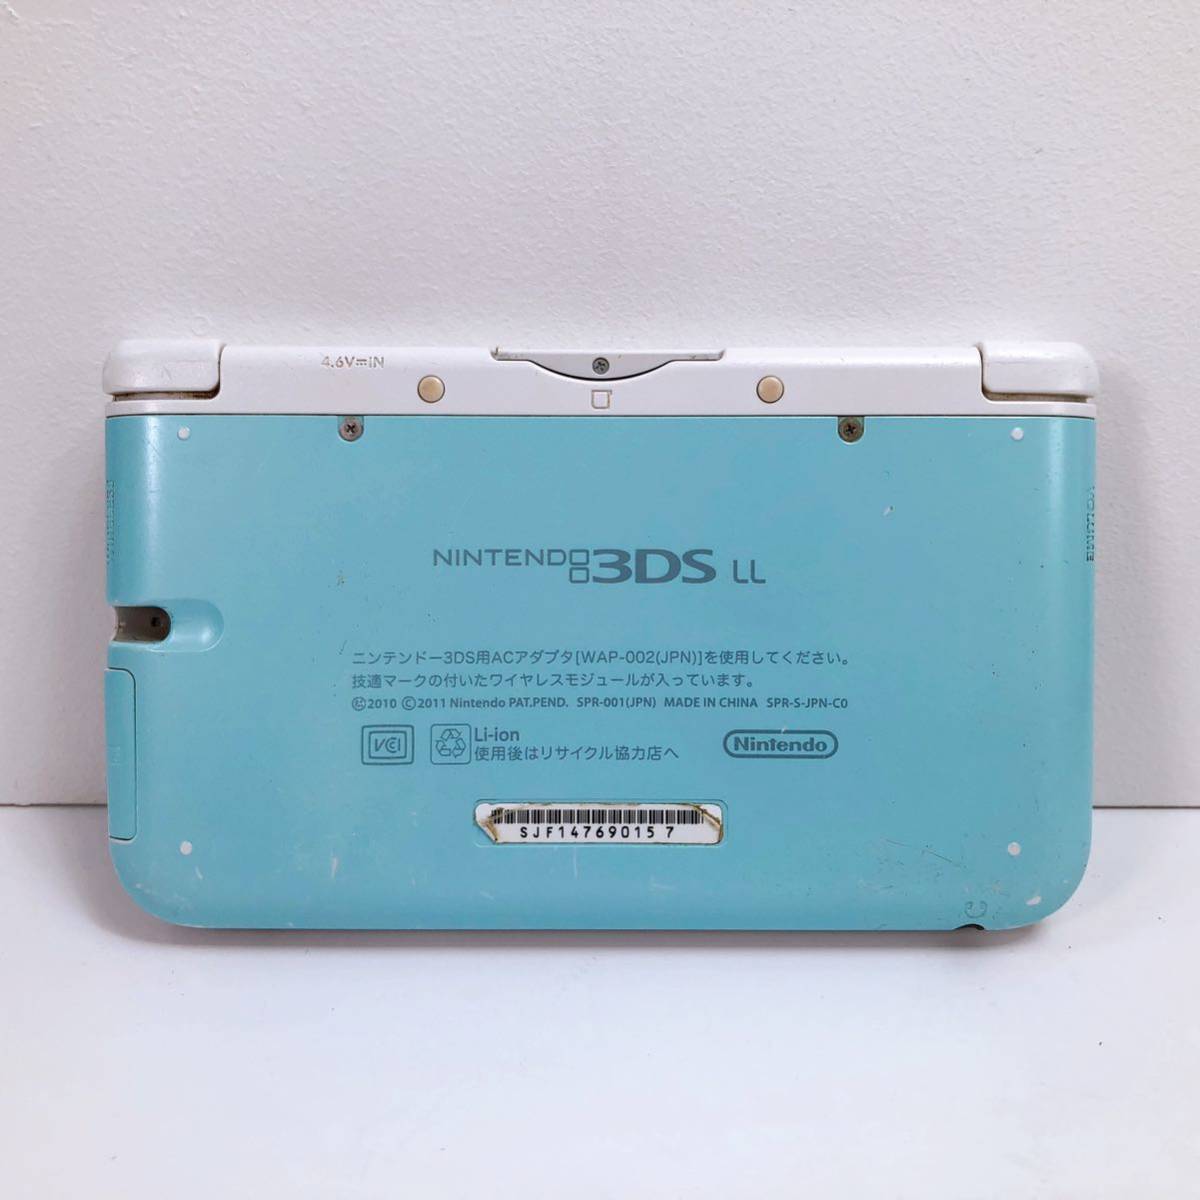 29【中古】Nintendo 3DS LL 本体 SPR-001 ミント×ホワイト